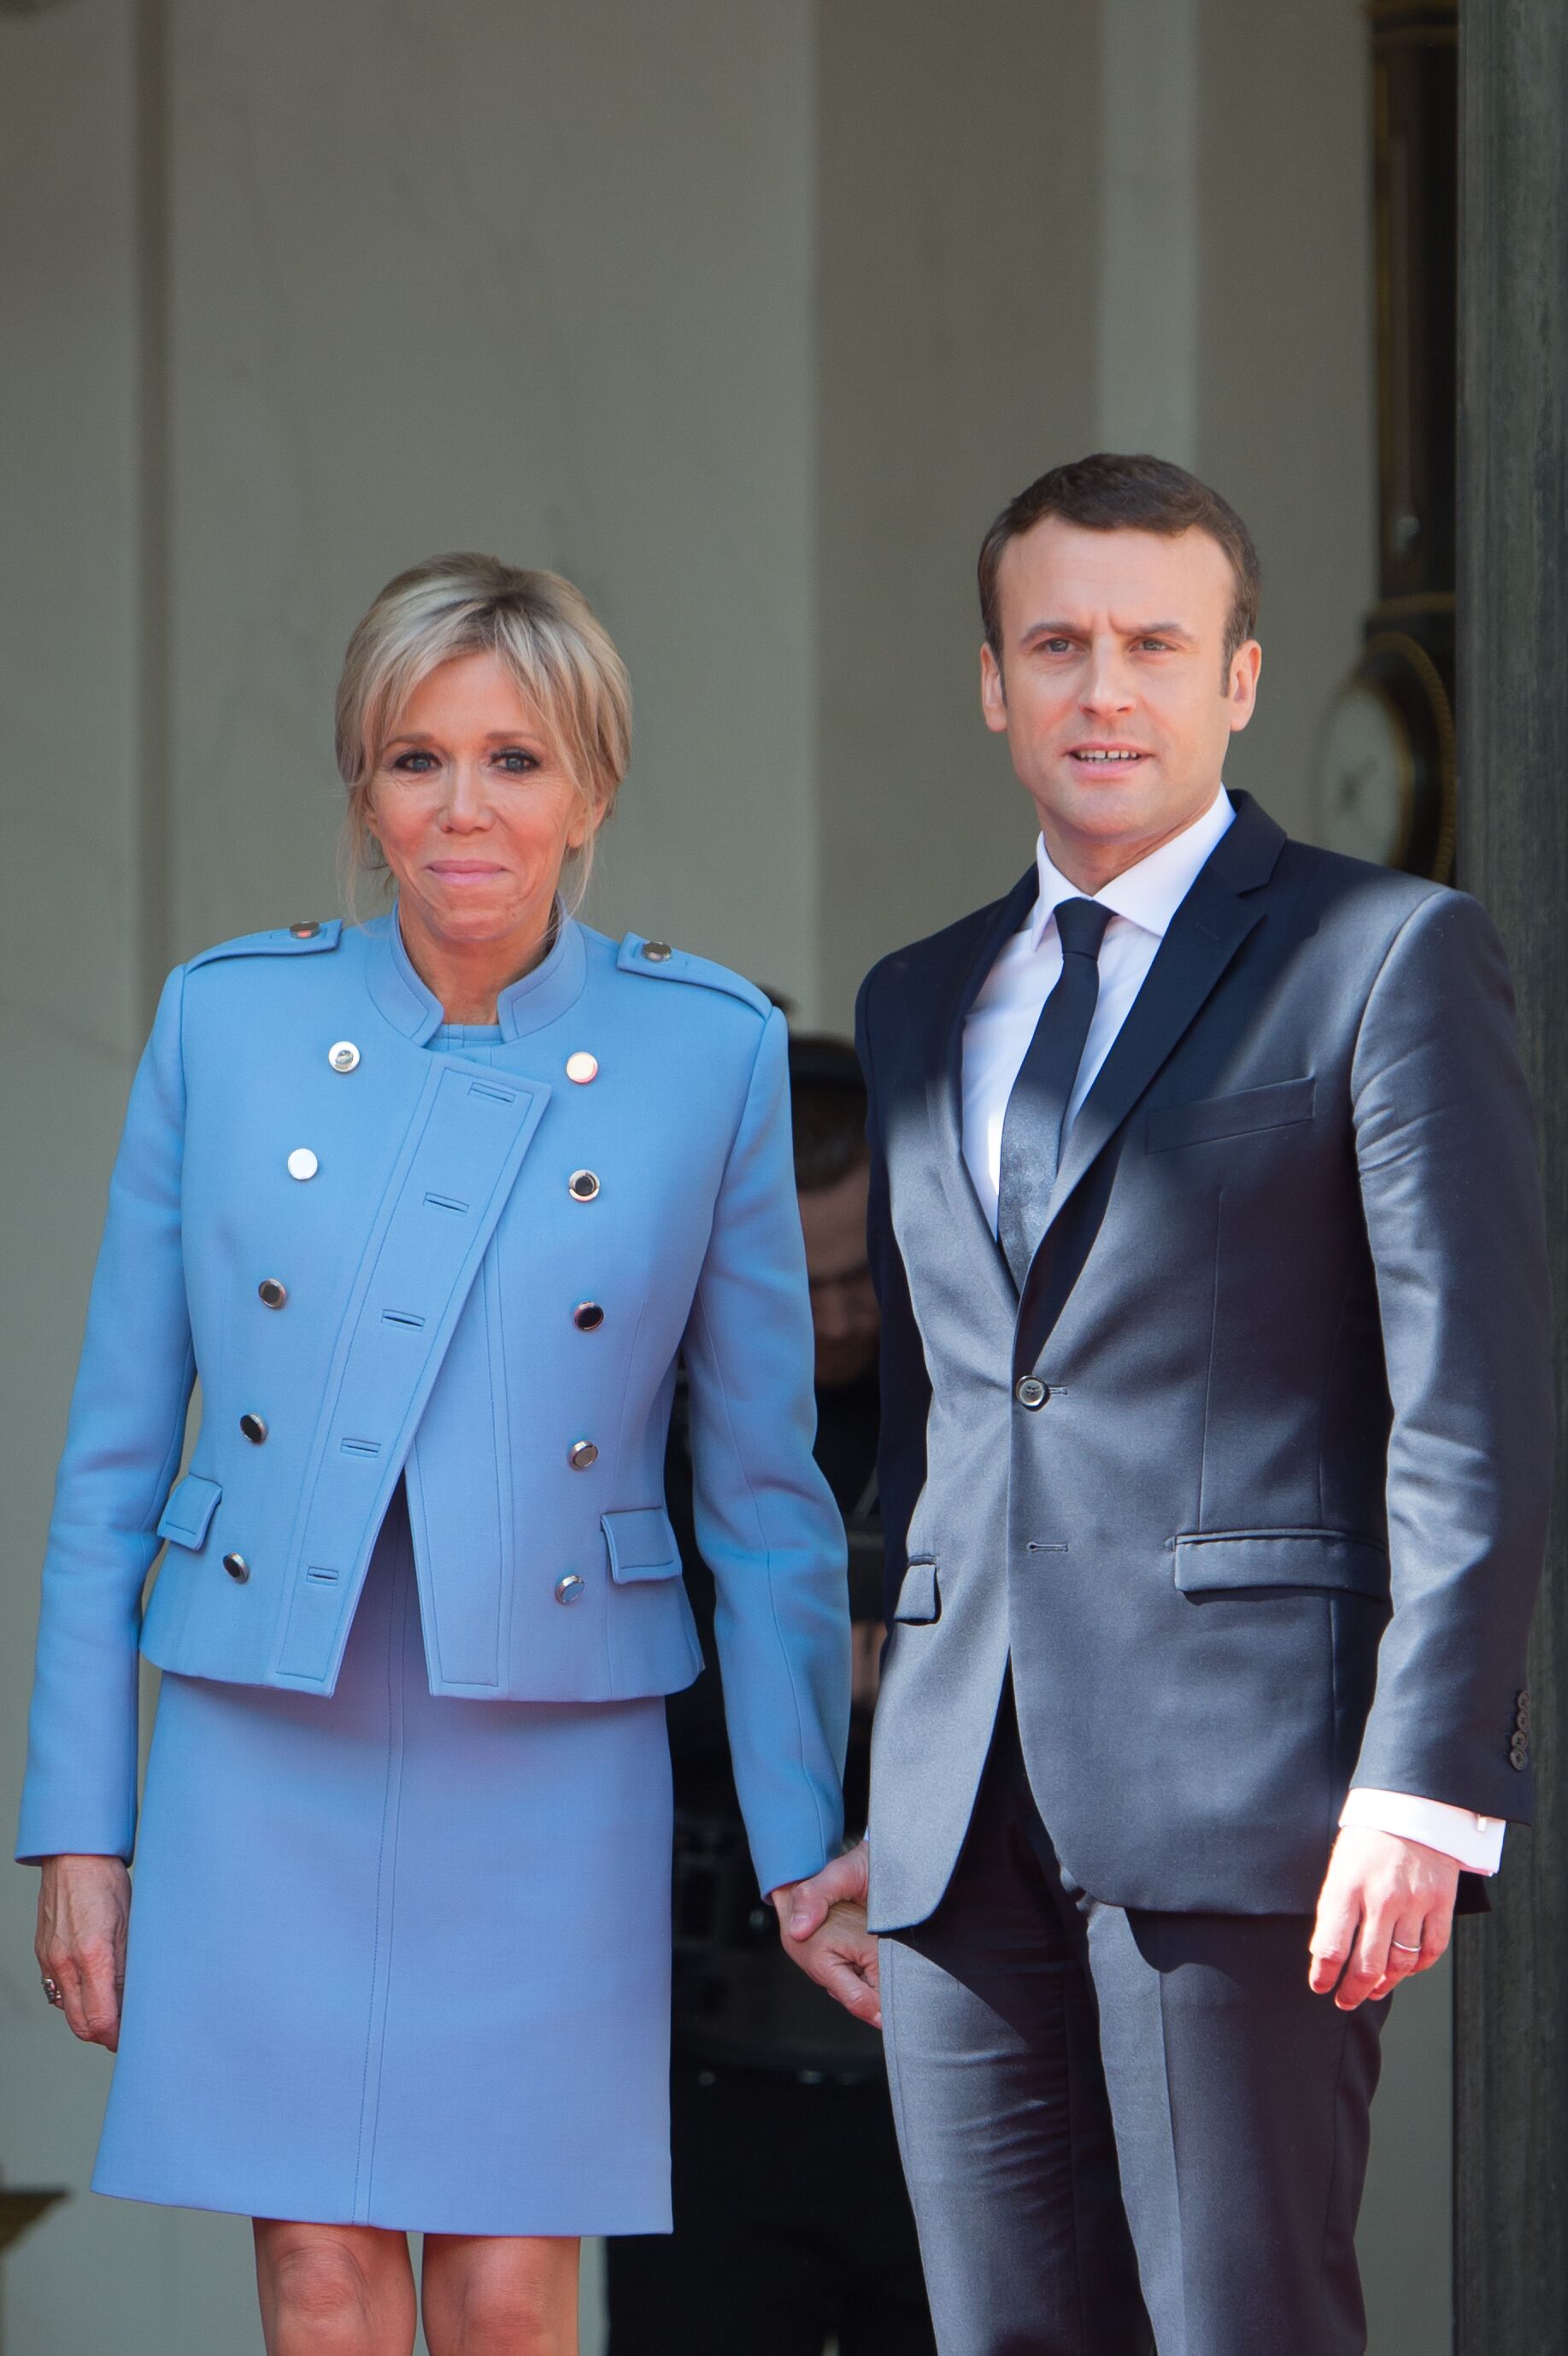 Emmanuel Macron pose avec son épouse Brigitte Macron au Palais présidentiel à Paris France. | Photo : Getty Images